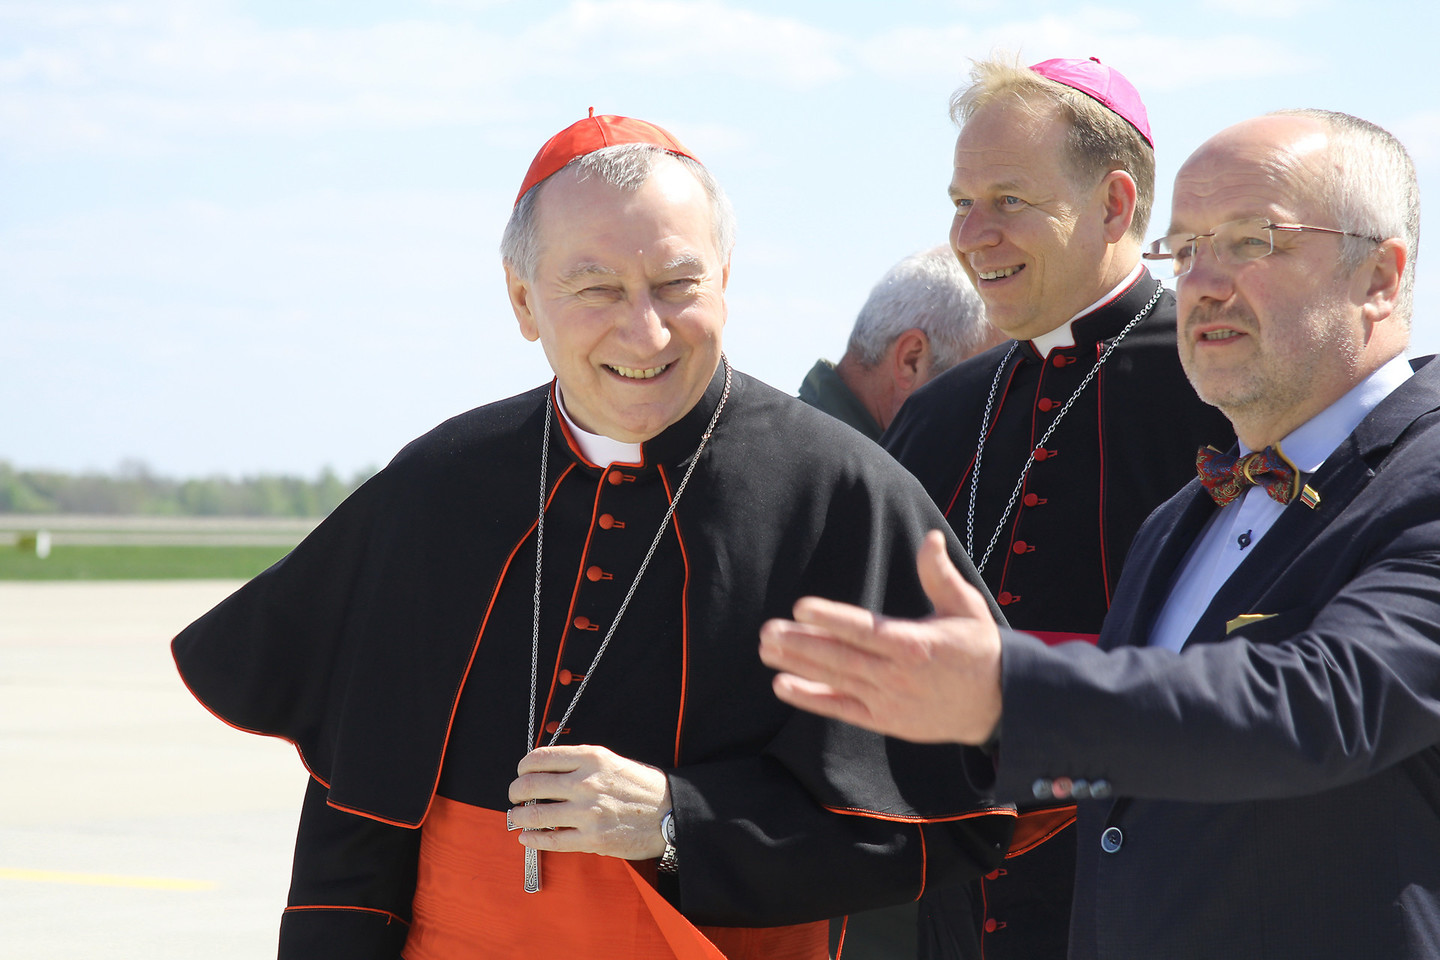 Vatikano valstybės sekretorius kardinolas P.Parolinas viešnagę Šiauliuose pradėjo nuo apsilankymo karinėje bazėje.<br>R.Vitkaus nuotr.